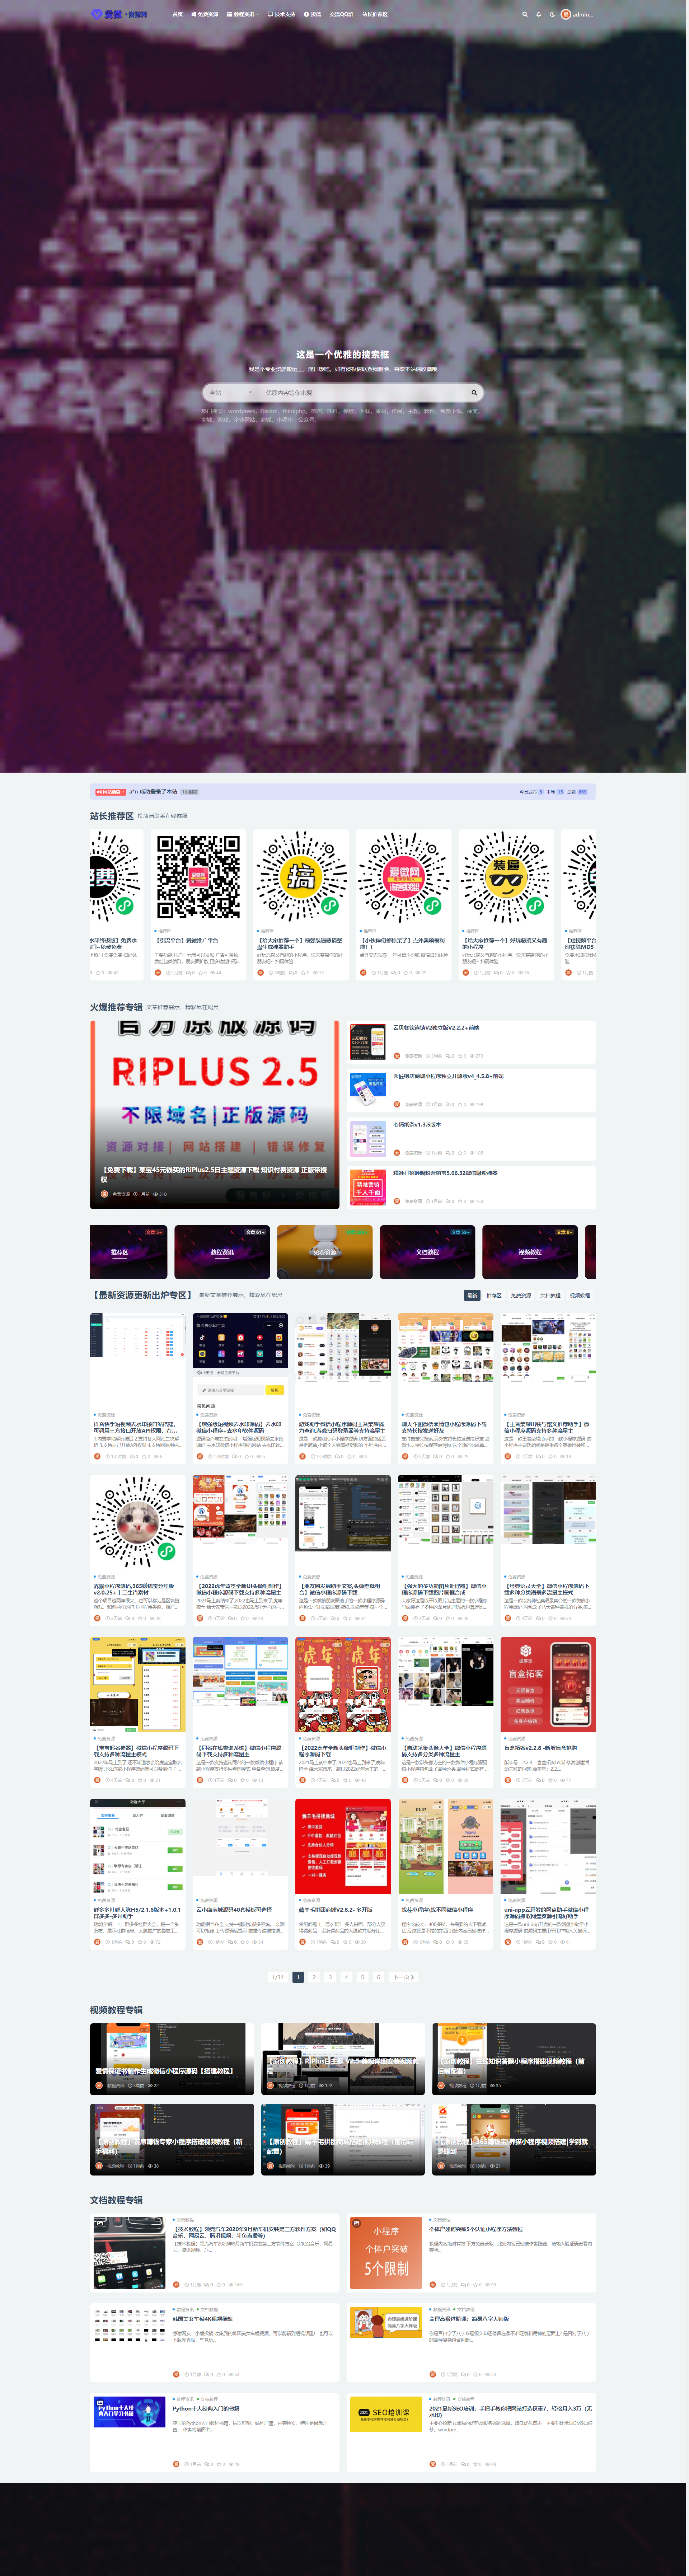 【整站程序】RiPro-V2去授权WordPress主题RiPlus虚拟收费主题源码下载-ABC资源网